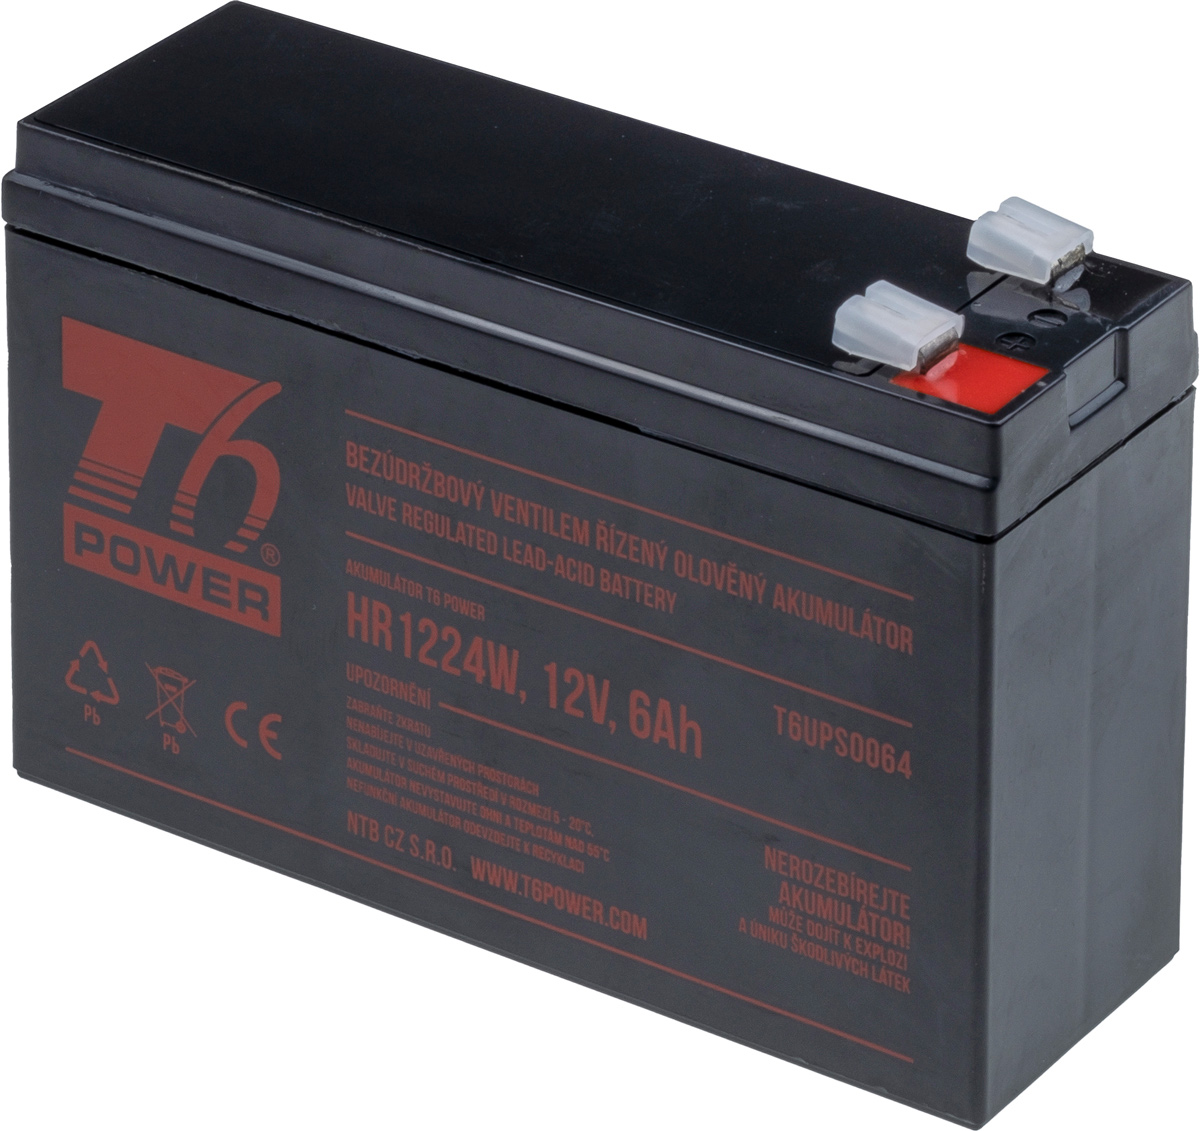 T6 Power RBC114, RBC106 - battery KIT T6APC0004